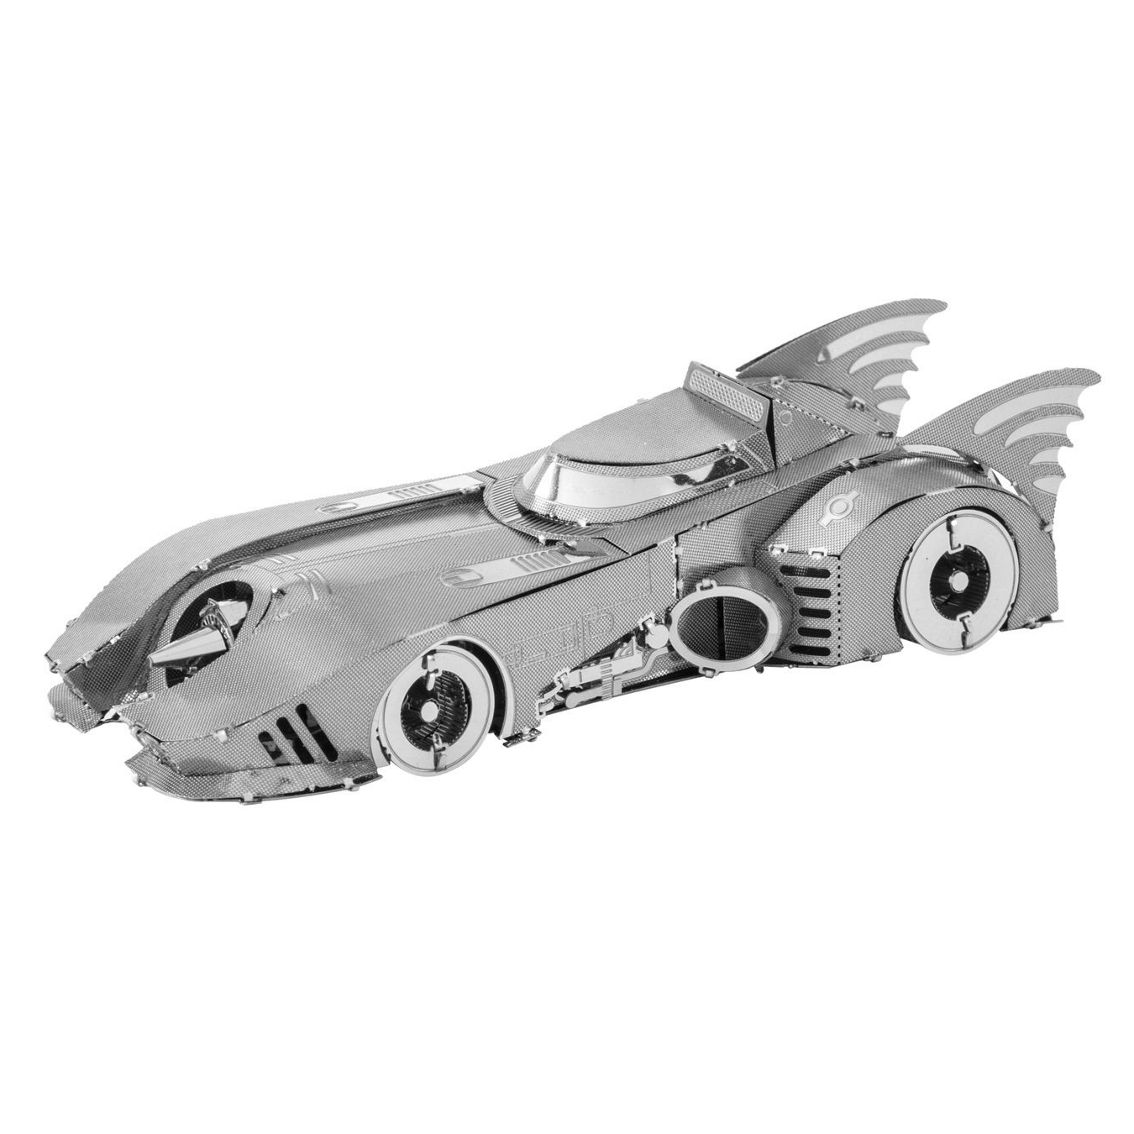 Fascinations Metal Earth 3D Metal Model Kit - Batman: 1989 Batmobile - Image 2 of 2